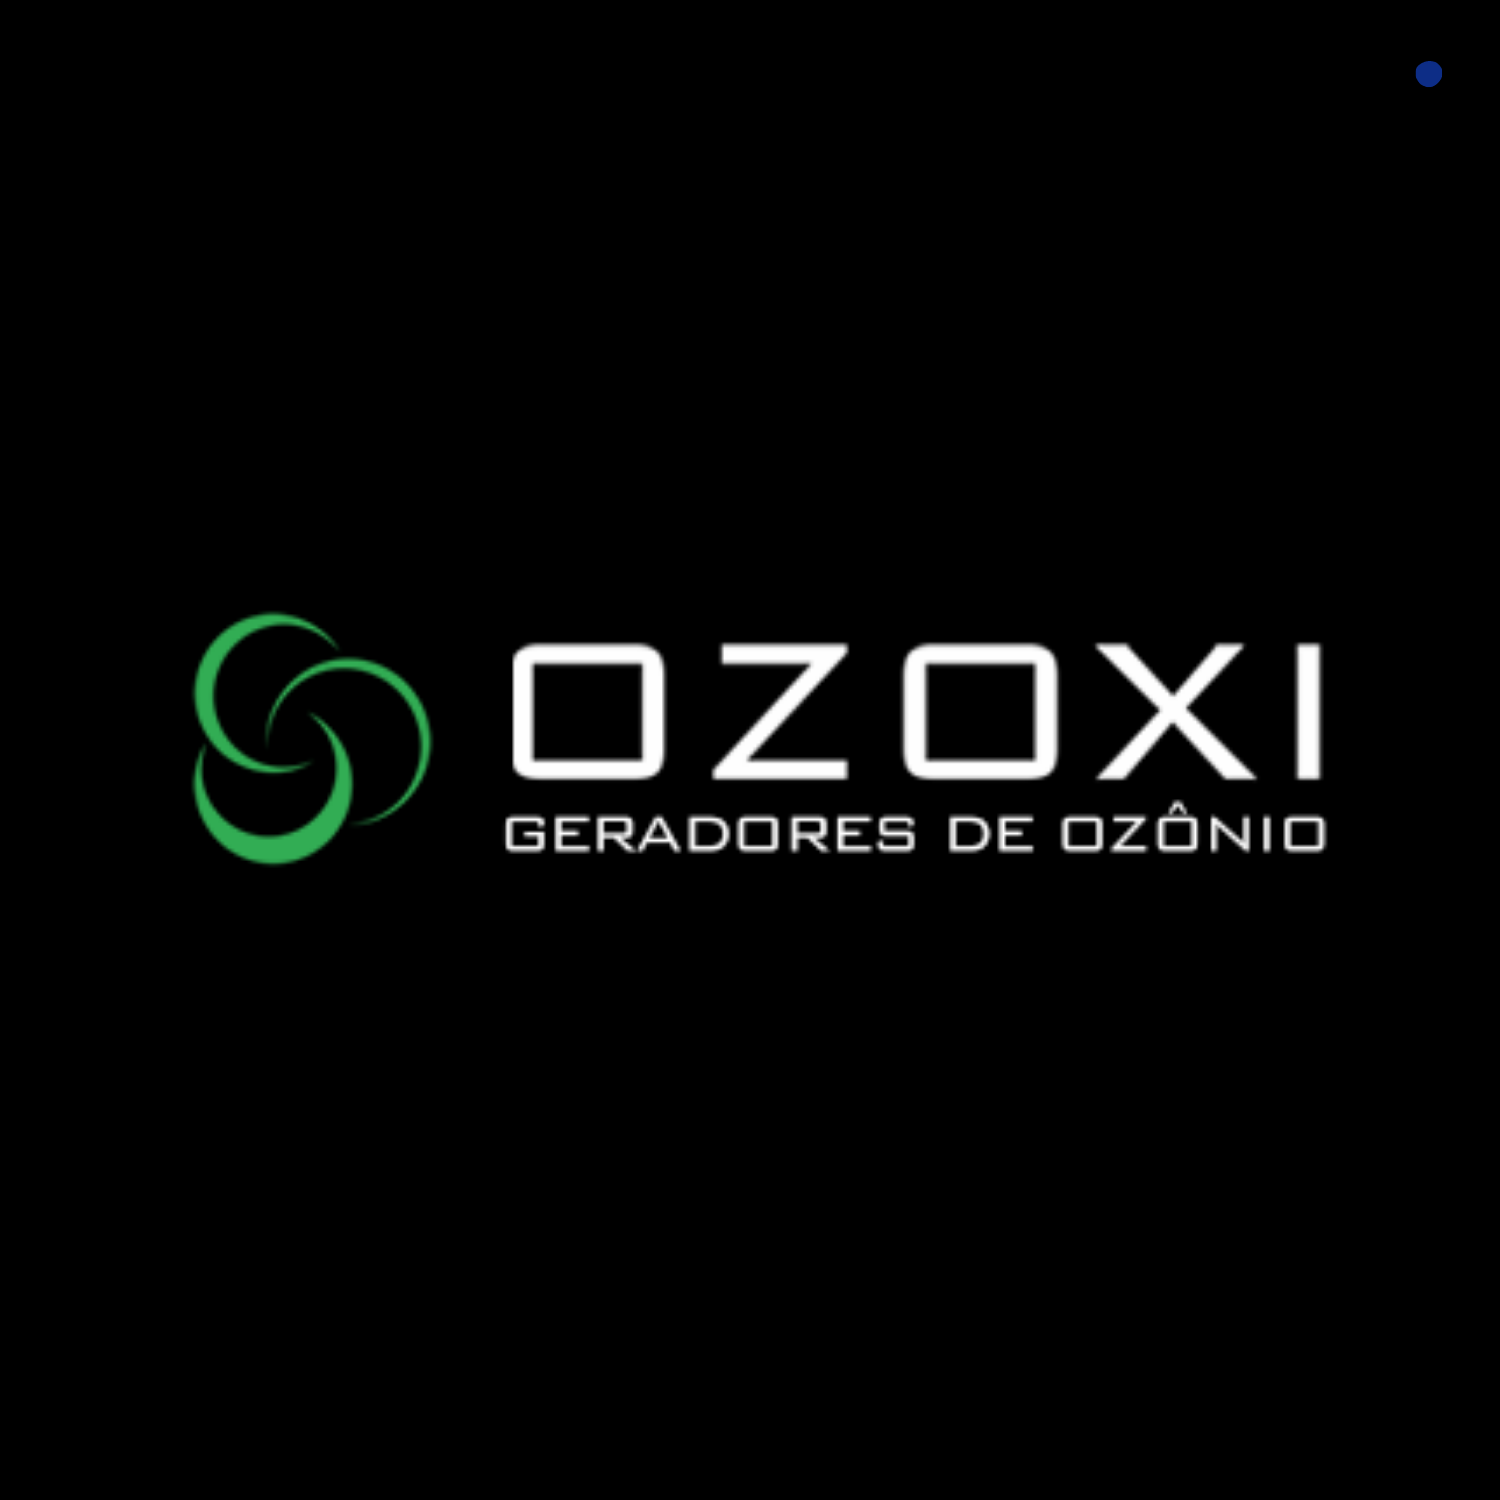 Ozoxi